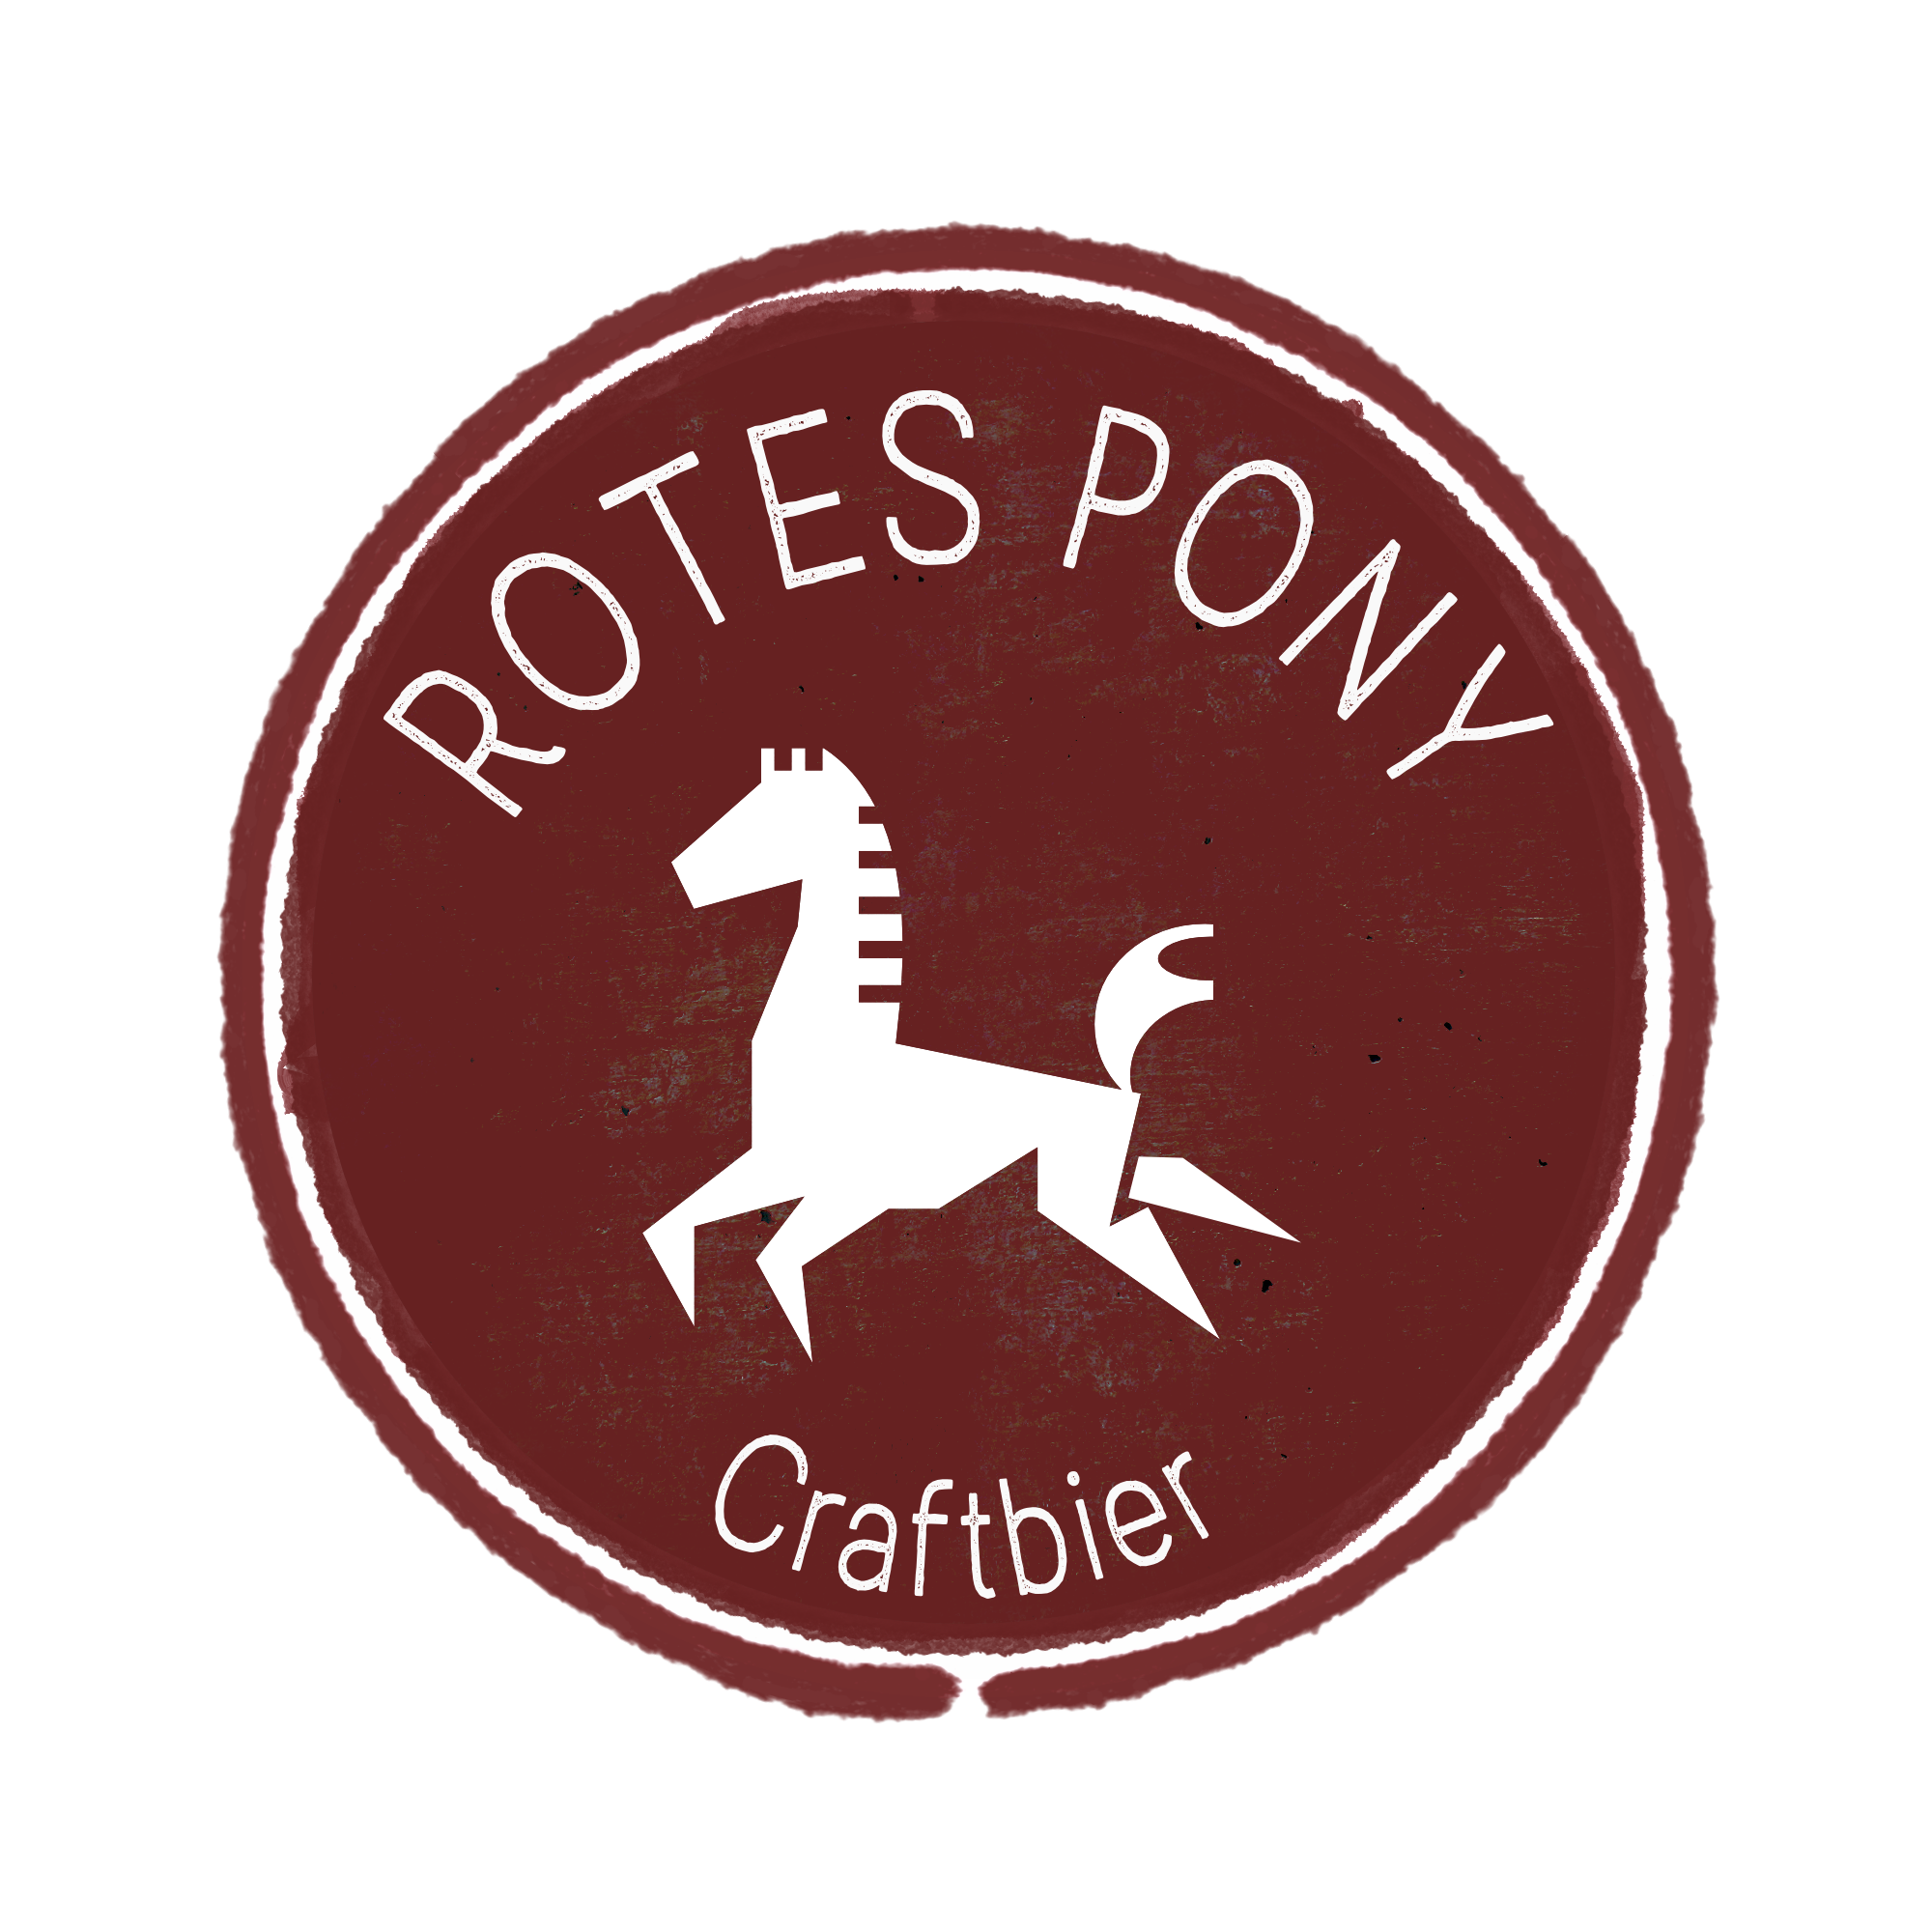 Rotes Pony - Brauerei